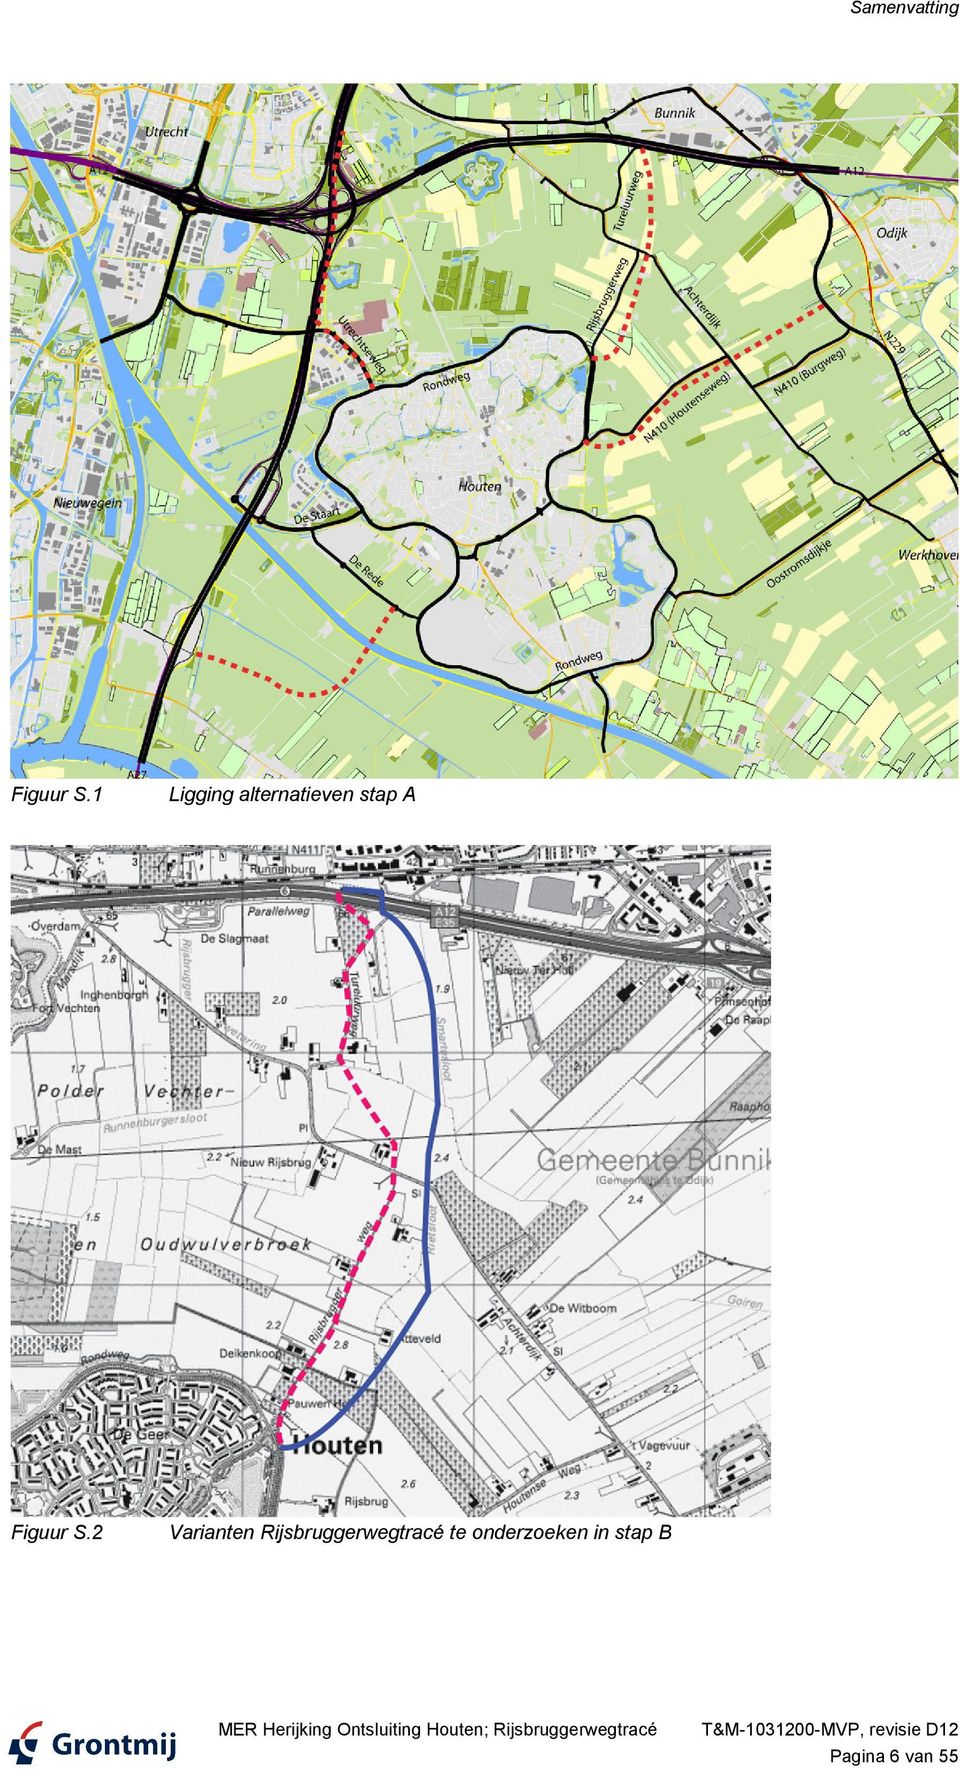 2 Varianten Rijsbruggerwegtracé te onderzoeken in stap